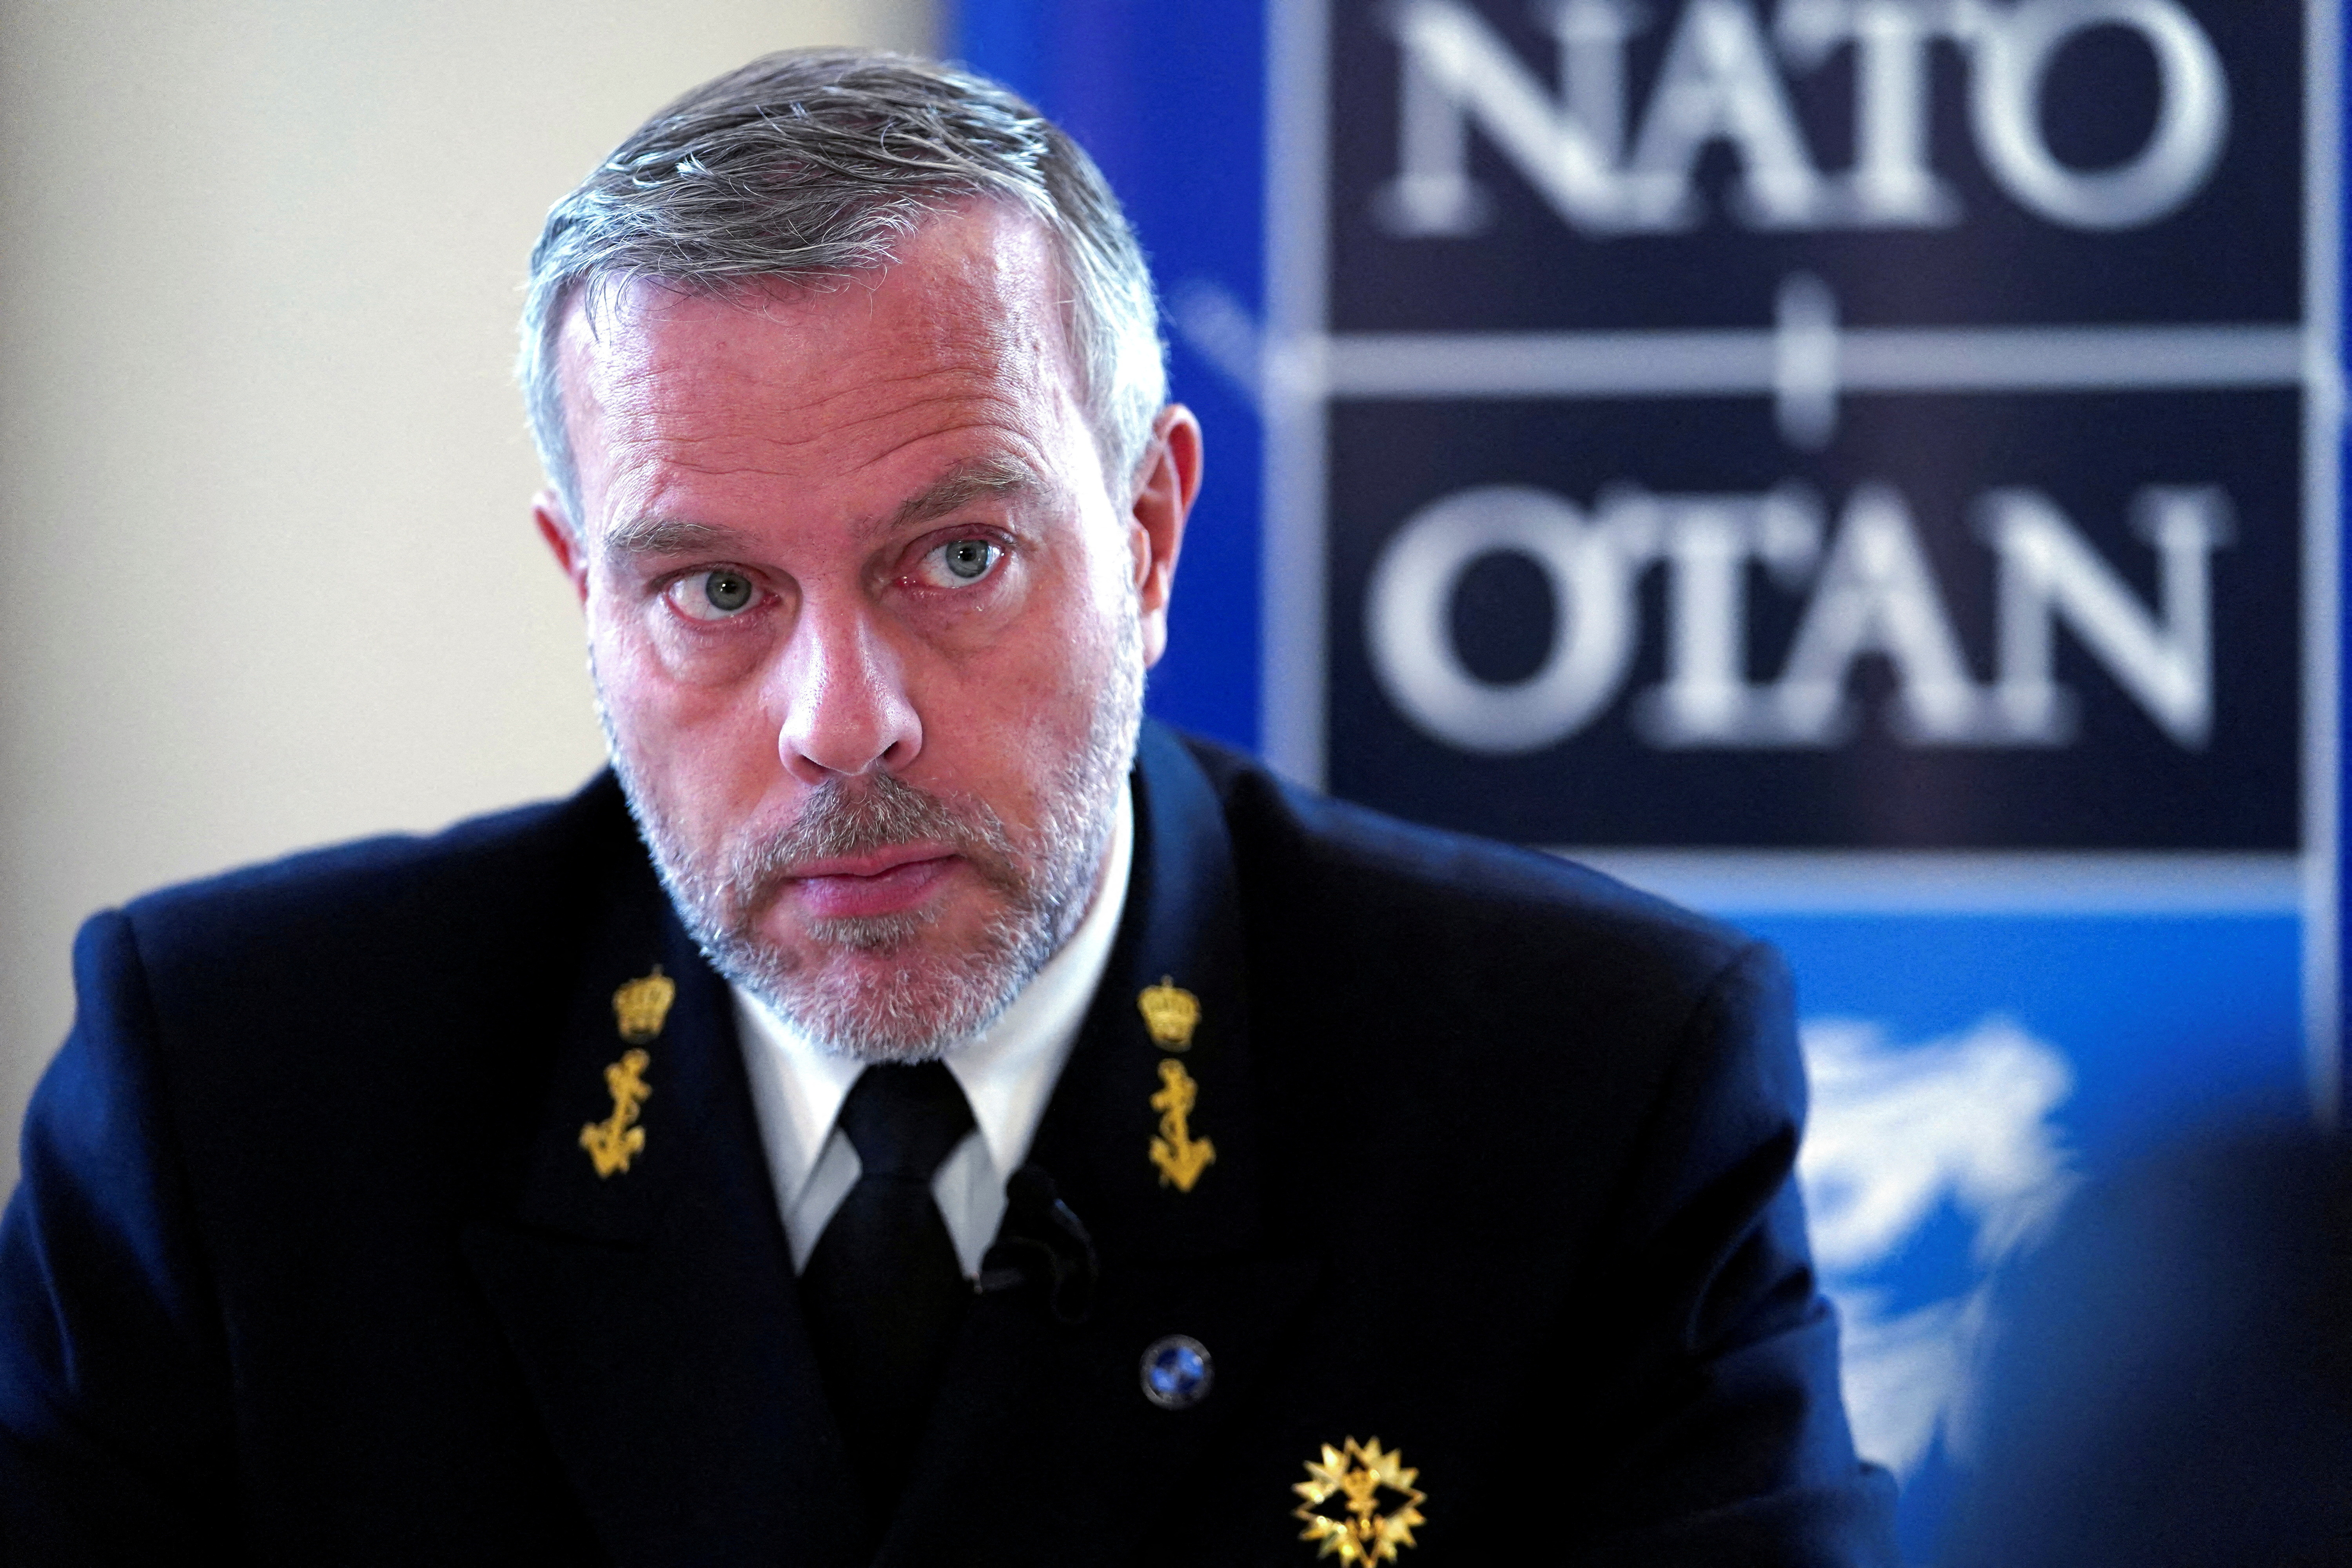 Admiral Bauer speaks during an interview in Tallinn